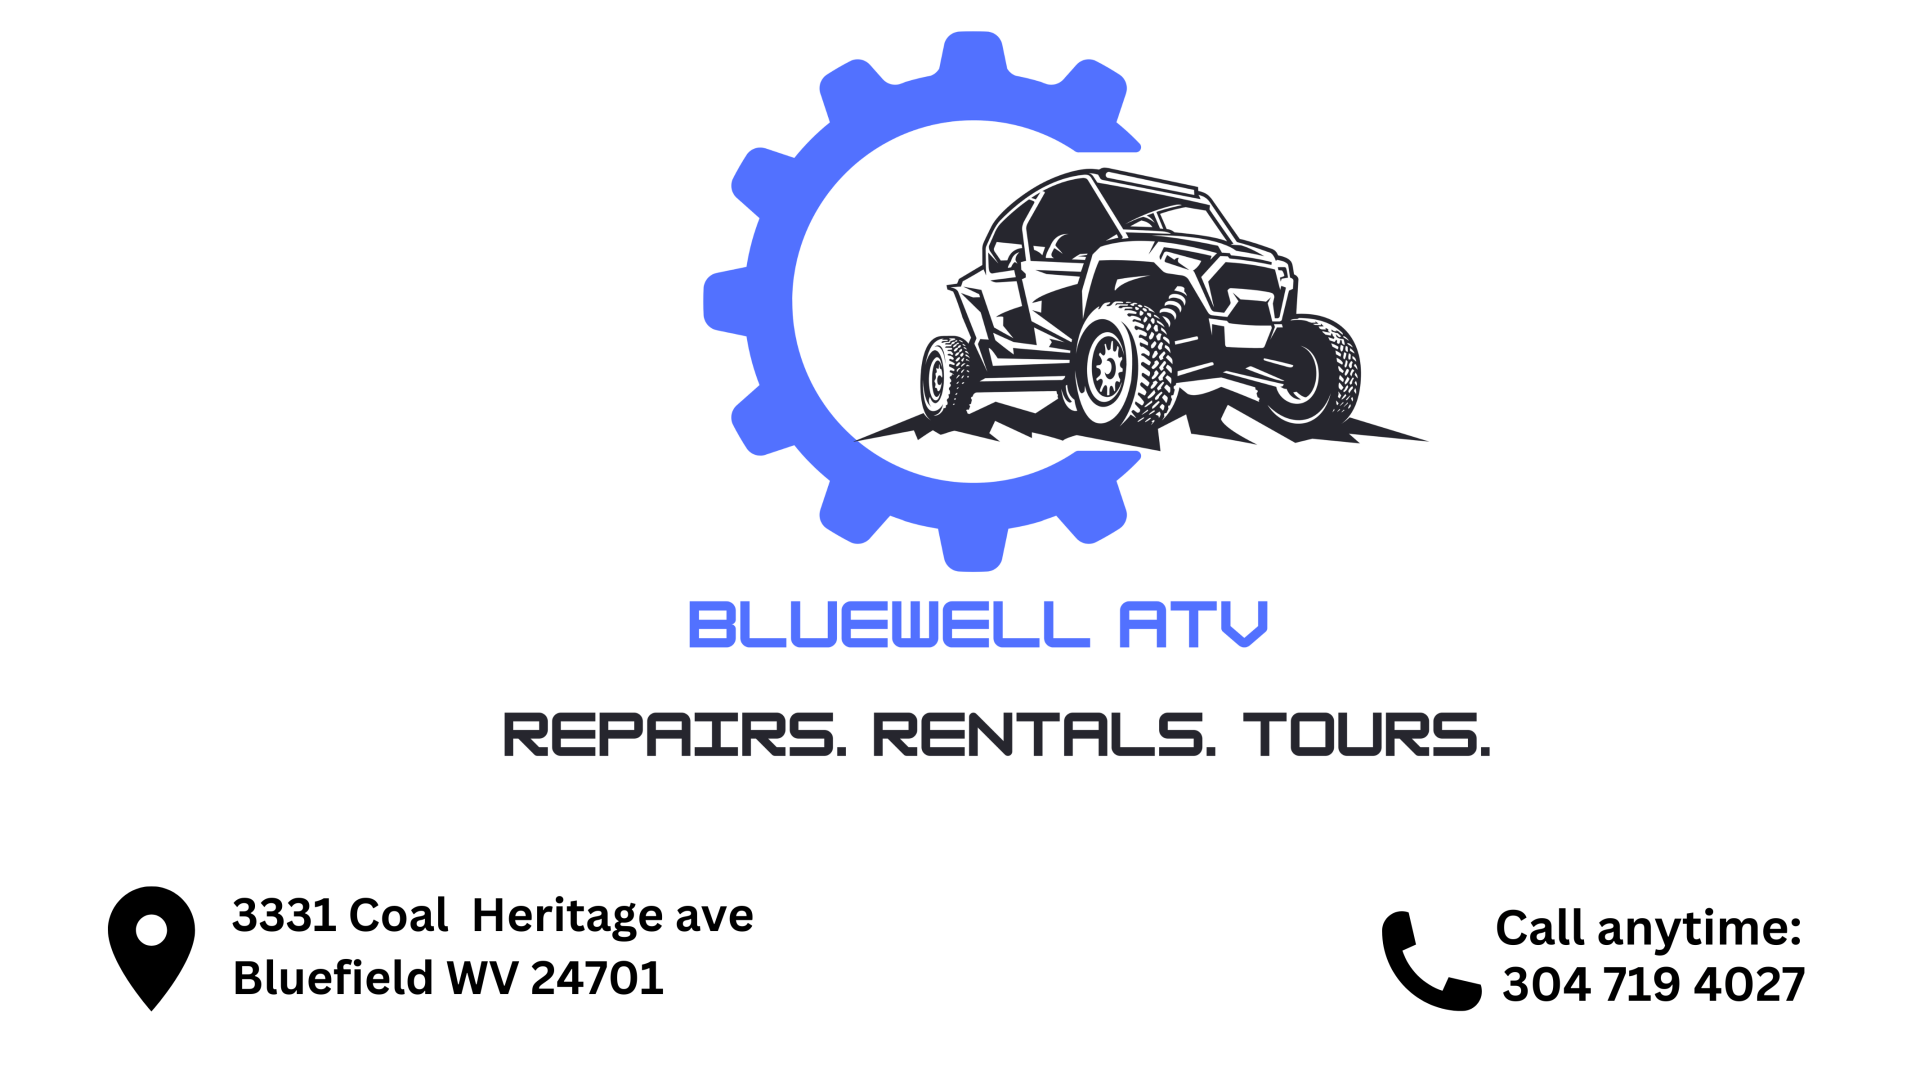 Bluewell ATV